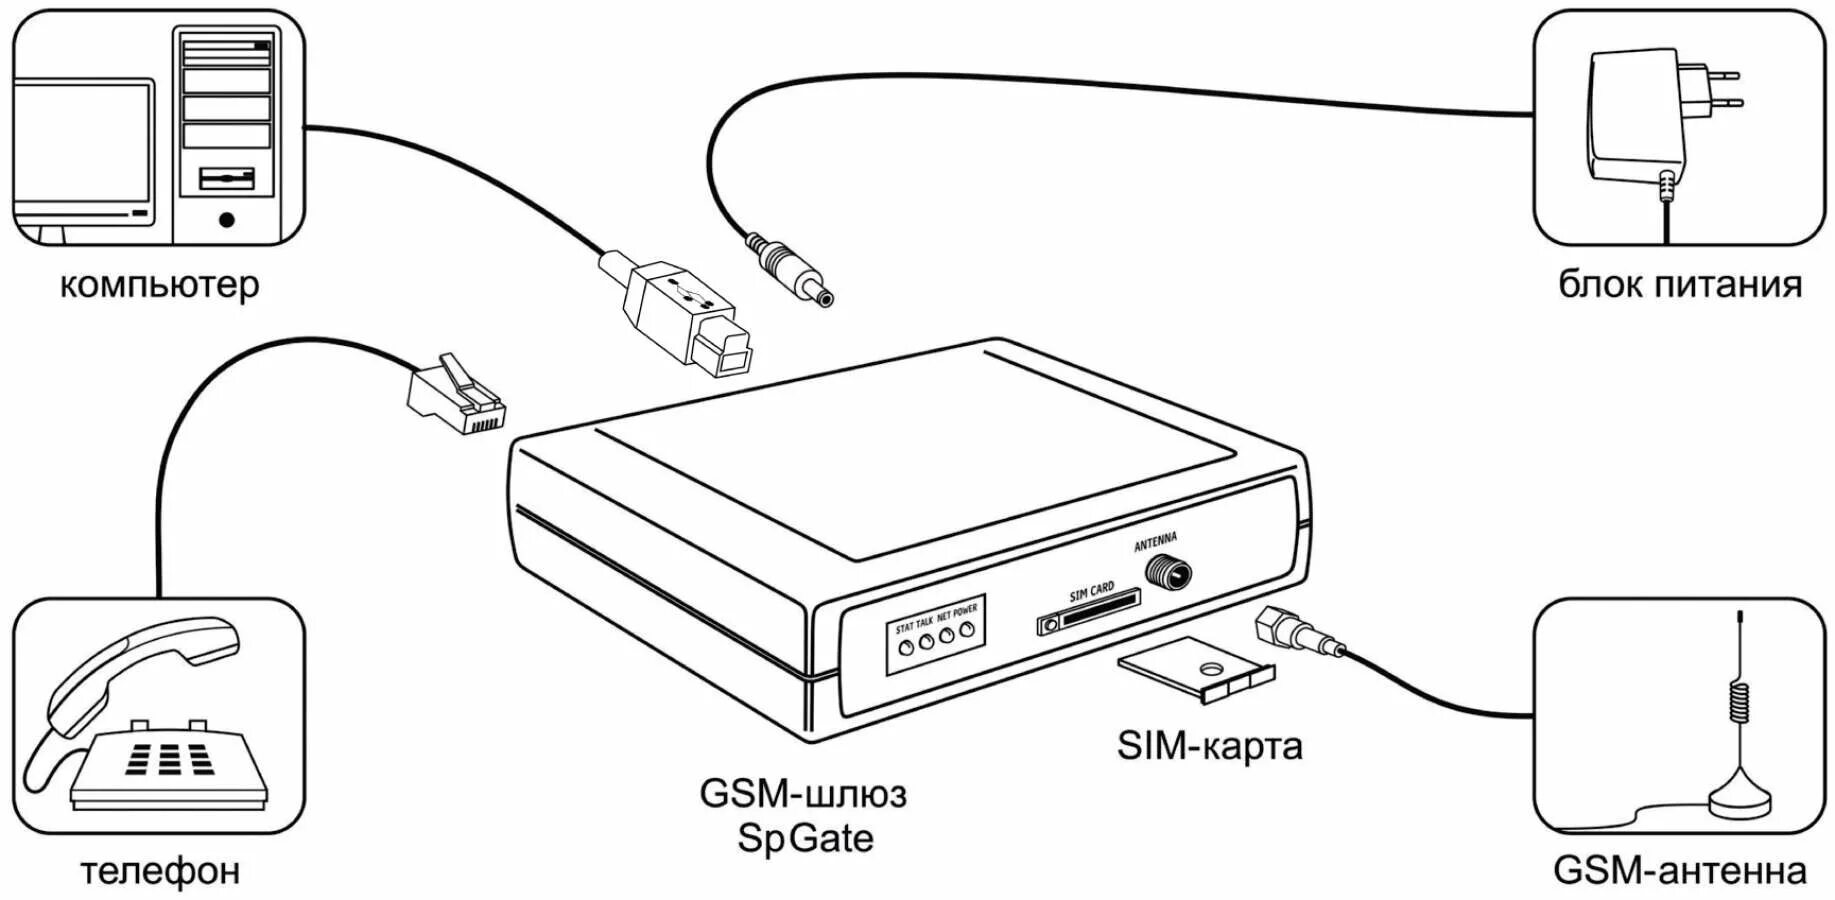 GSM-шлюз SPGATE L. GSM шлюз модуль для стационарного телефона. Аналоговый GSM шлюз для стационарного телефона. GSM шлюз для сим карт.